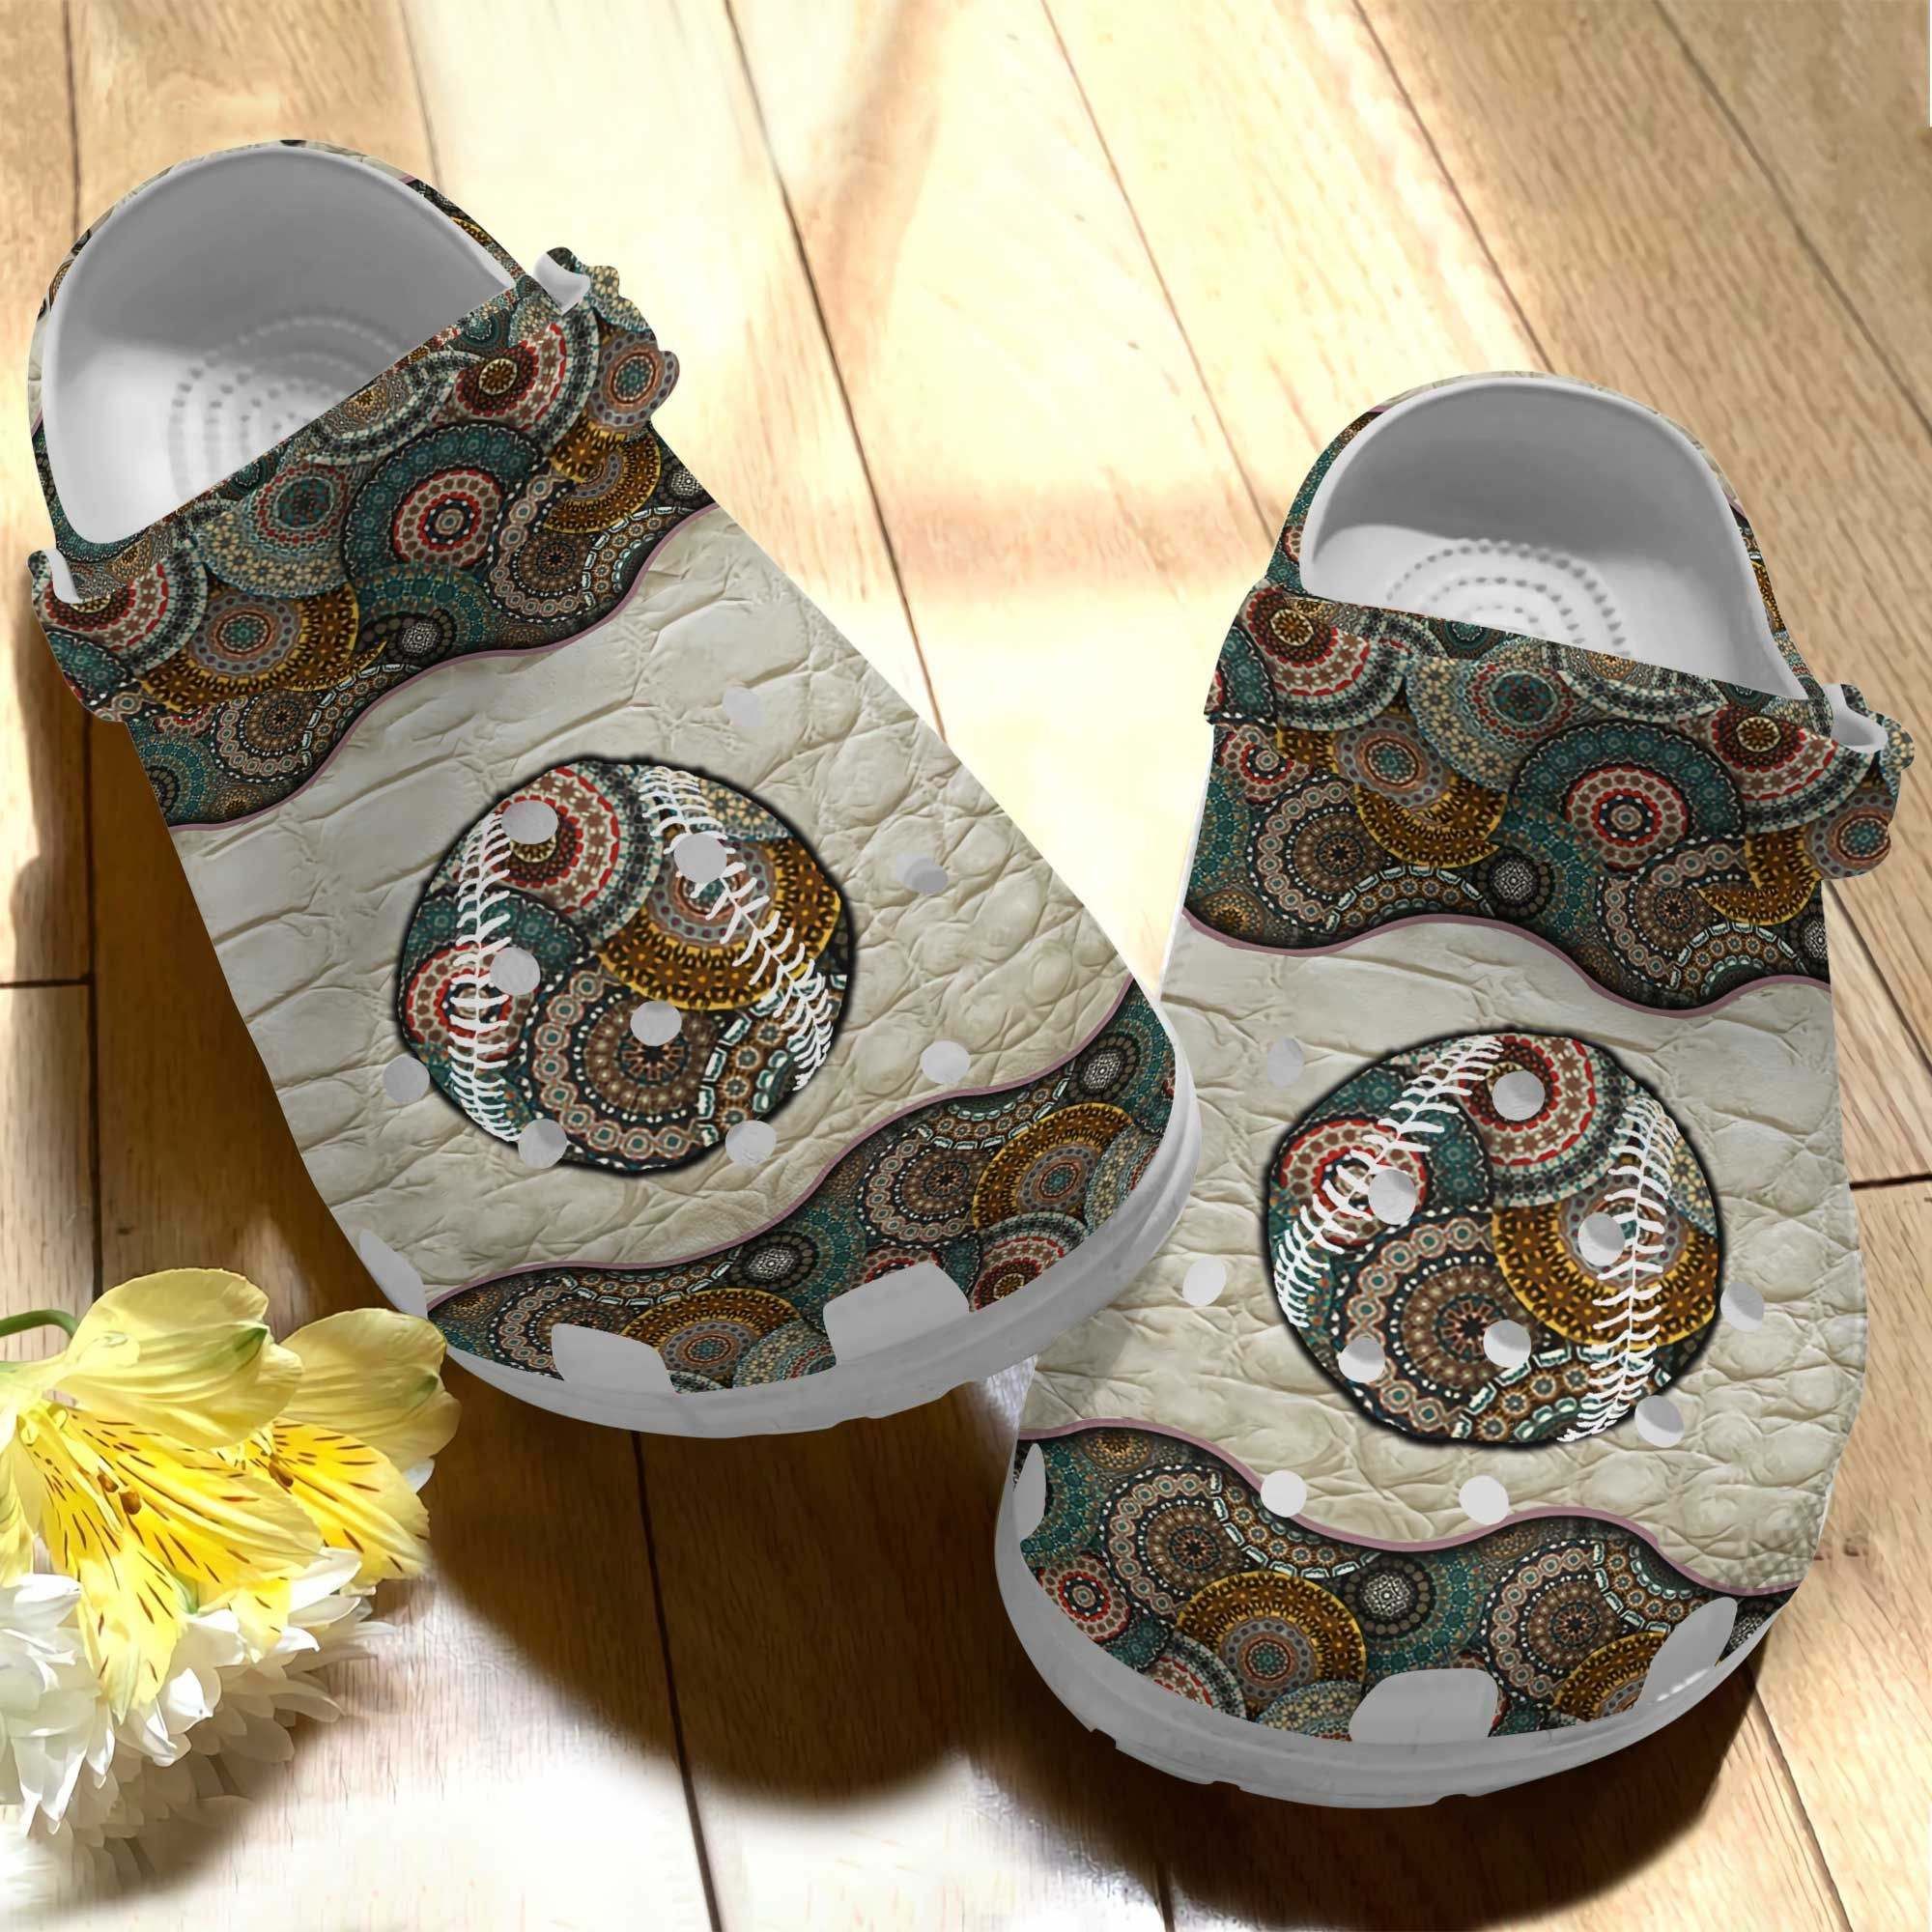 Peace Baseball Shoes Crocs Crocbland Clog For Men Women